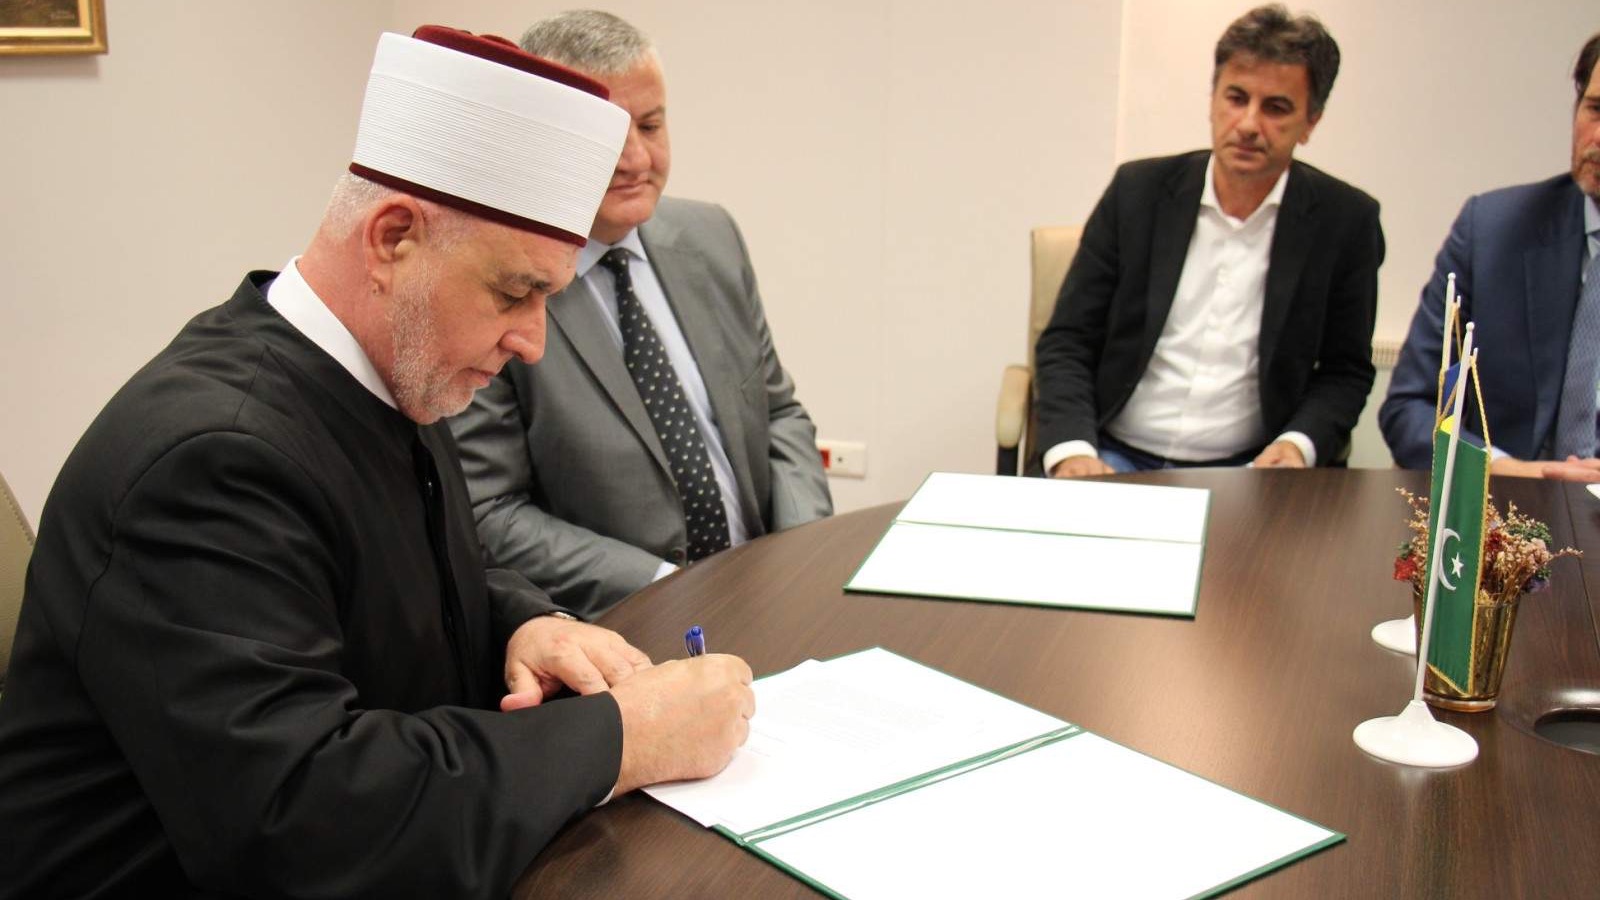 Potpisan Ugovor za kupovinu objekta za potrebe Islamskog pedagoškog fakulteta u Zenici (VIDEO)